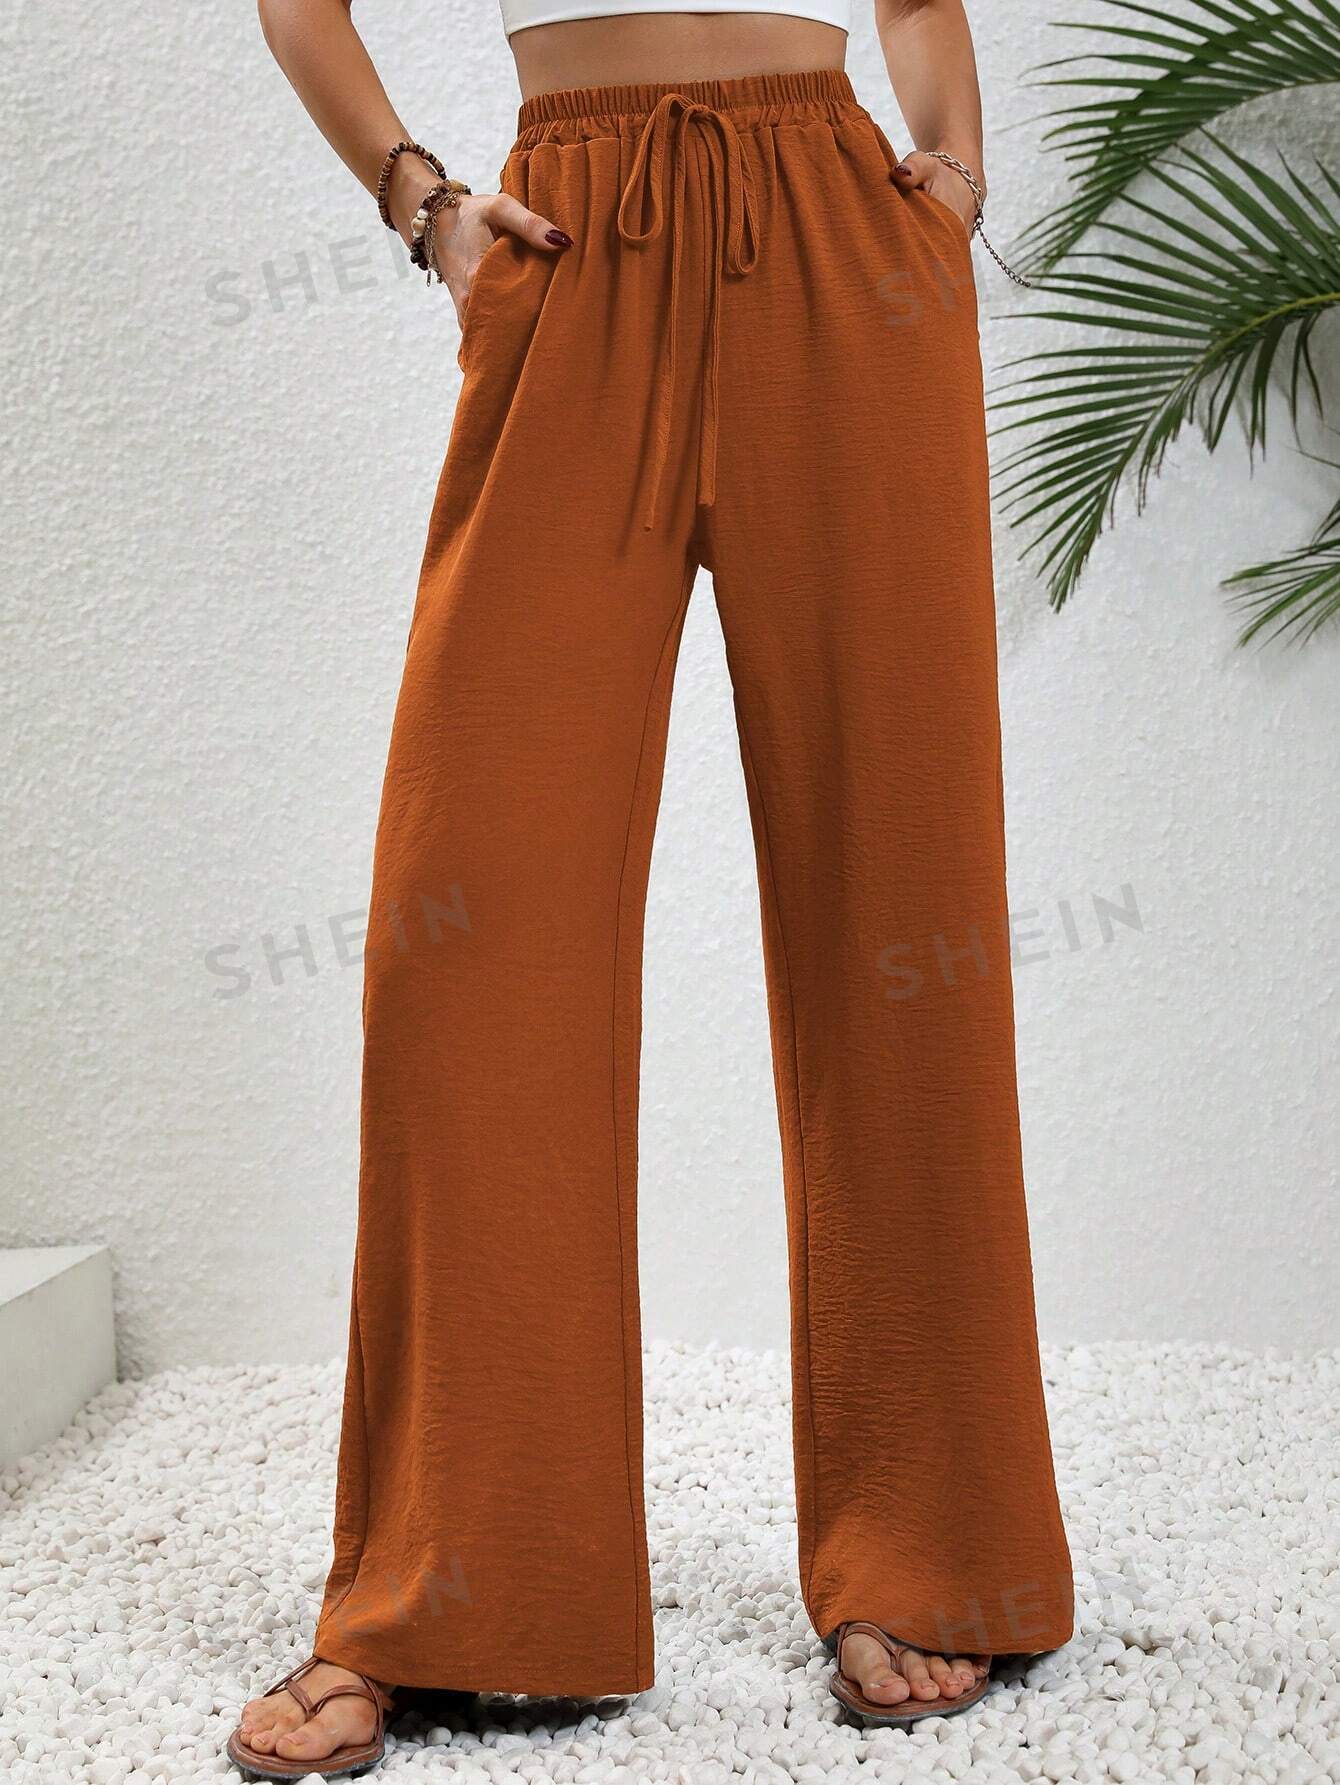 SHEIN LUNE женские однотонные длинные брюки с завышенной талией и завязками на талии и карманами, жженый апельсин